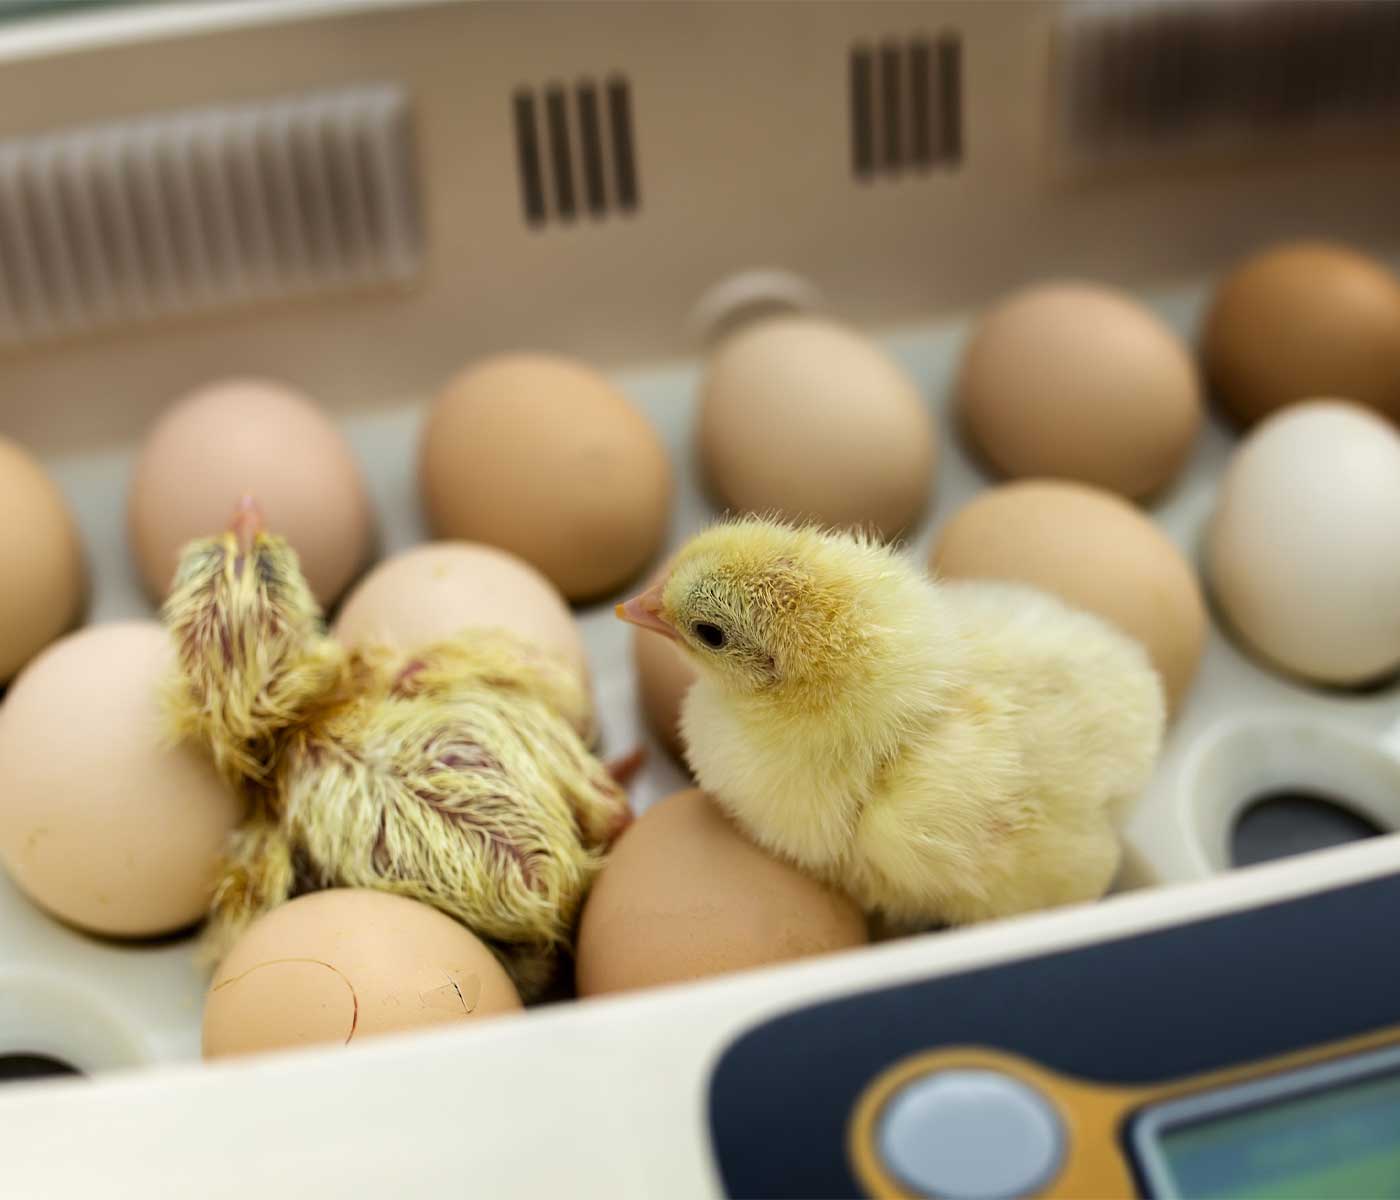 Mejora de la incubabilidad del huevo y la calidad de la cáscara gracias a la suplementación con oligoelementos